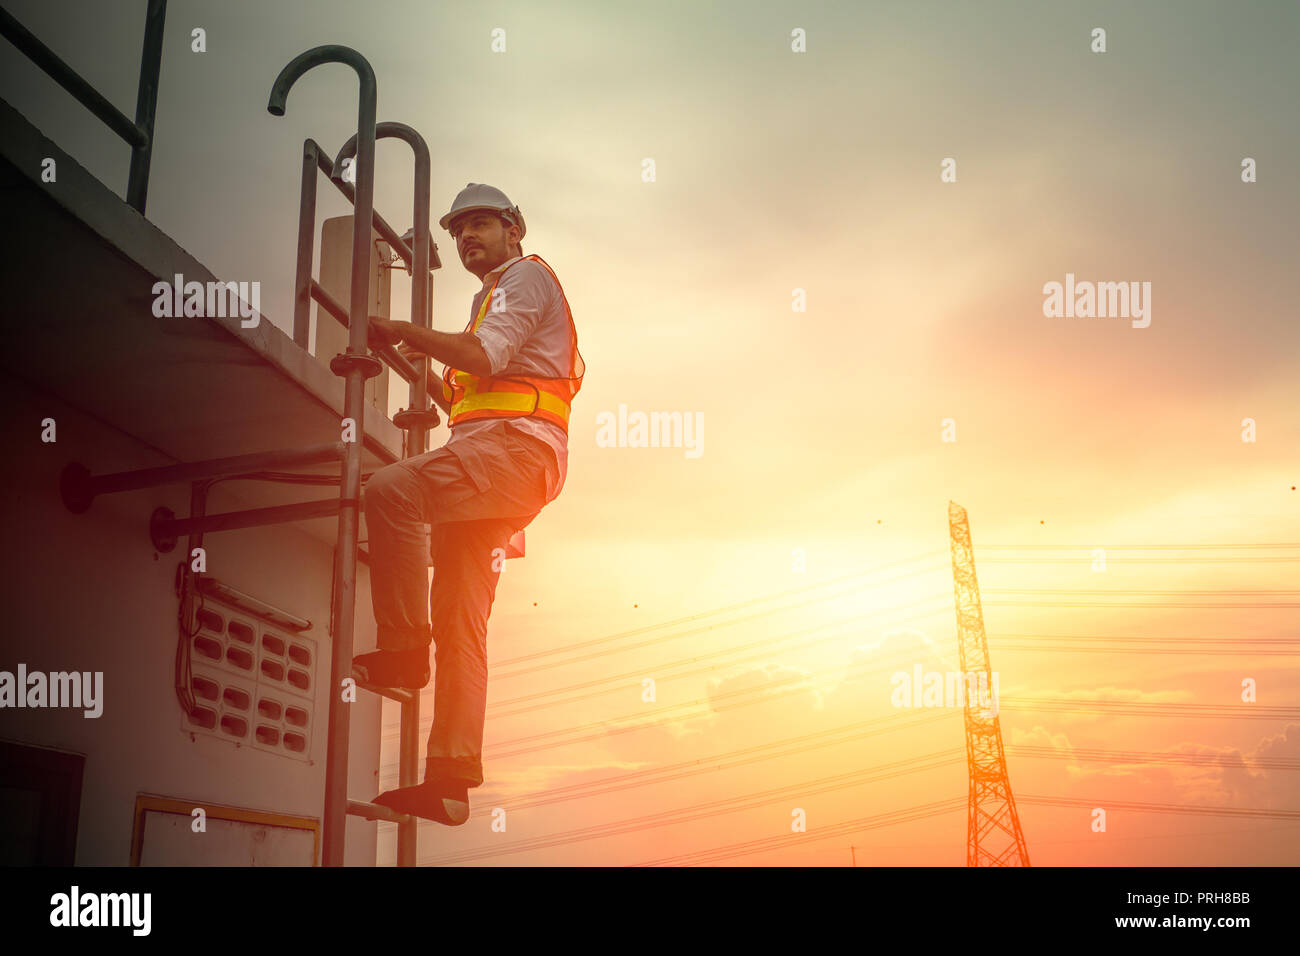 Ingenieur Techniker an der Leiter arbeiten Strom Kabel line Sonnenuntergang Hintergrund zu beheben Stockfoto